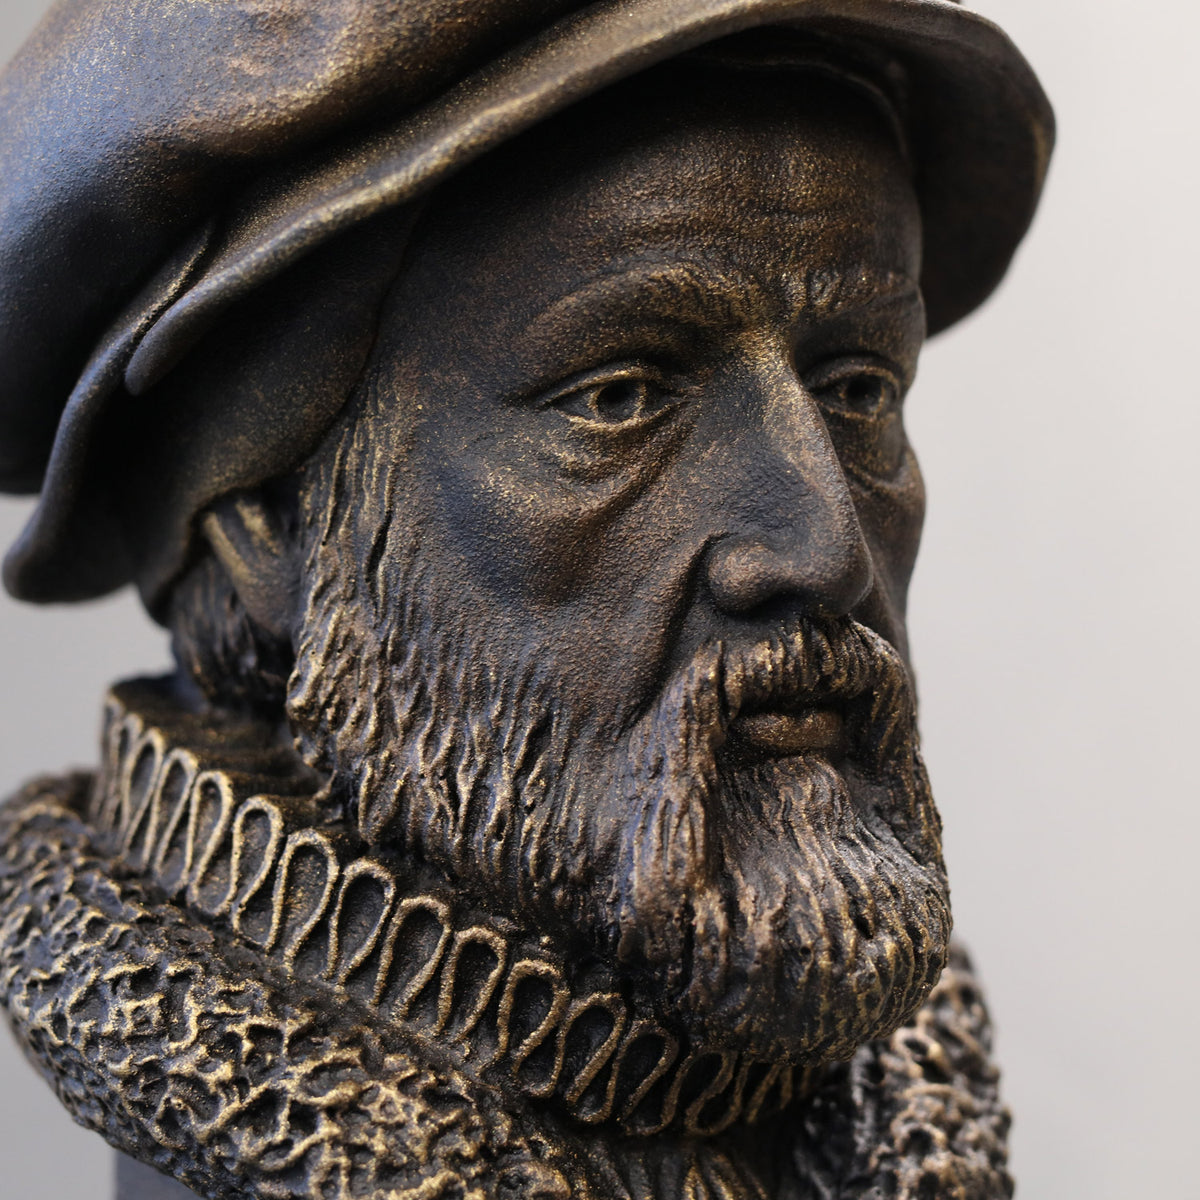 William Tyndale - Sculpture